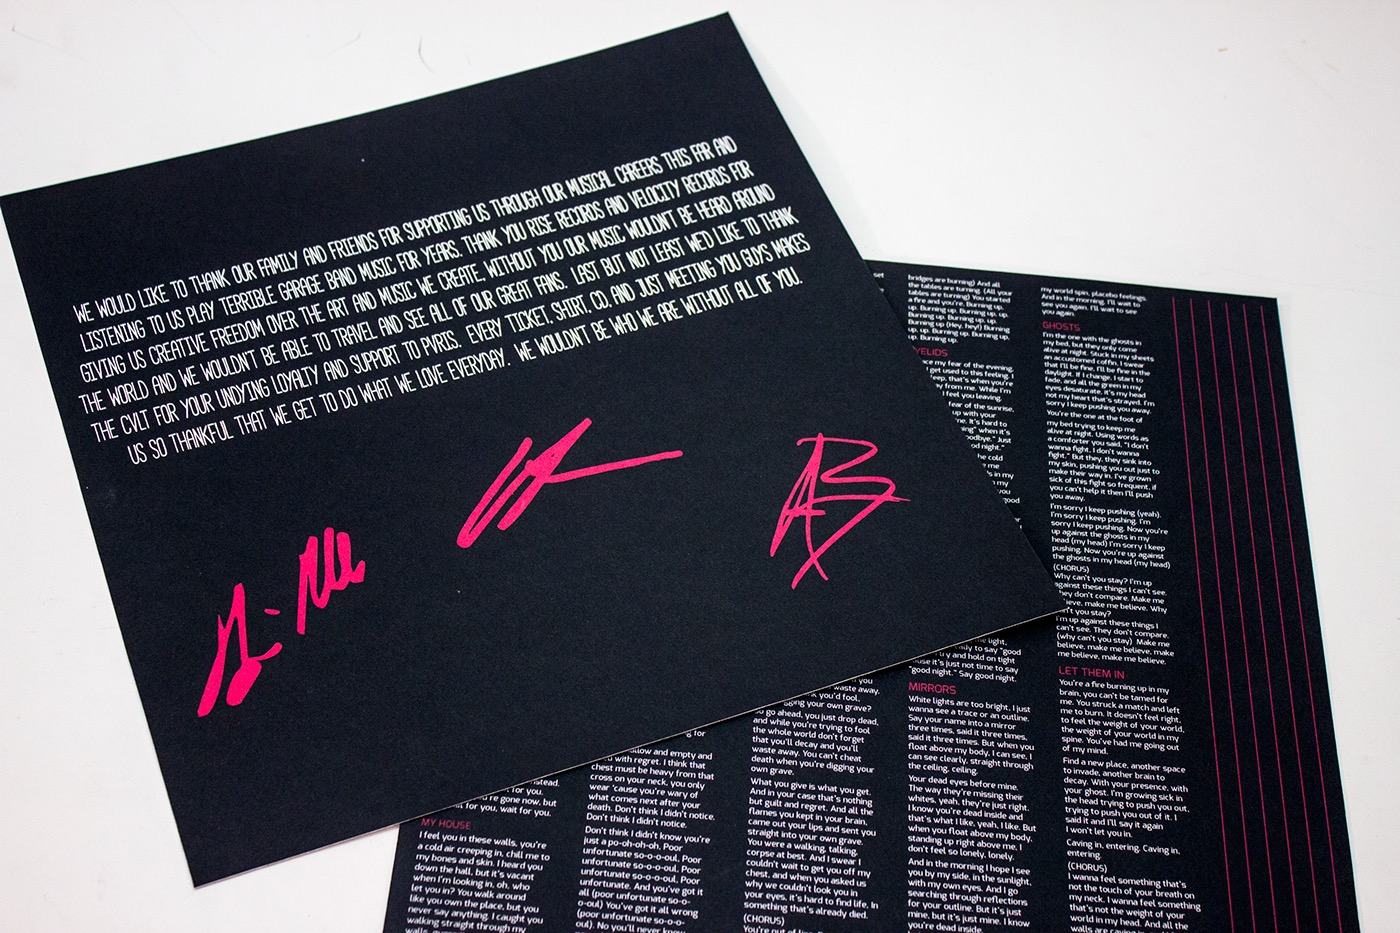 Packaging packaging design graphic design  retro design punk pvris Album design music screen printing music design